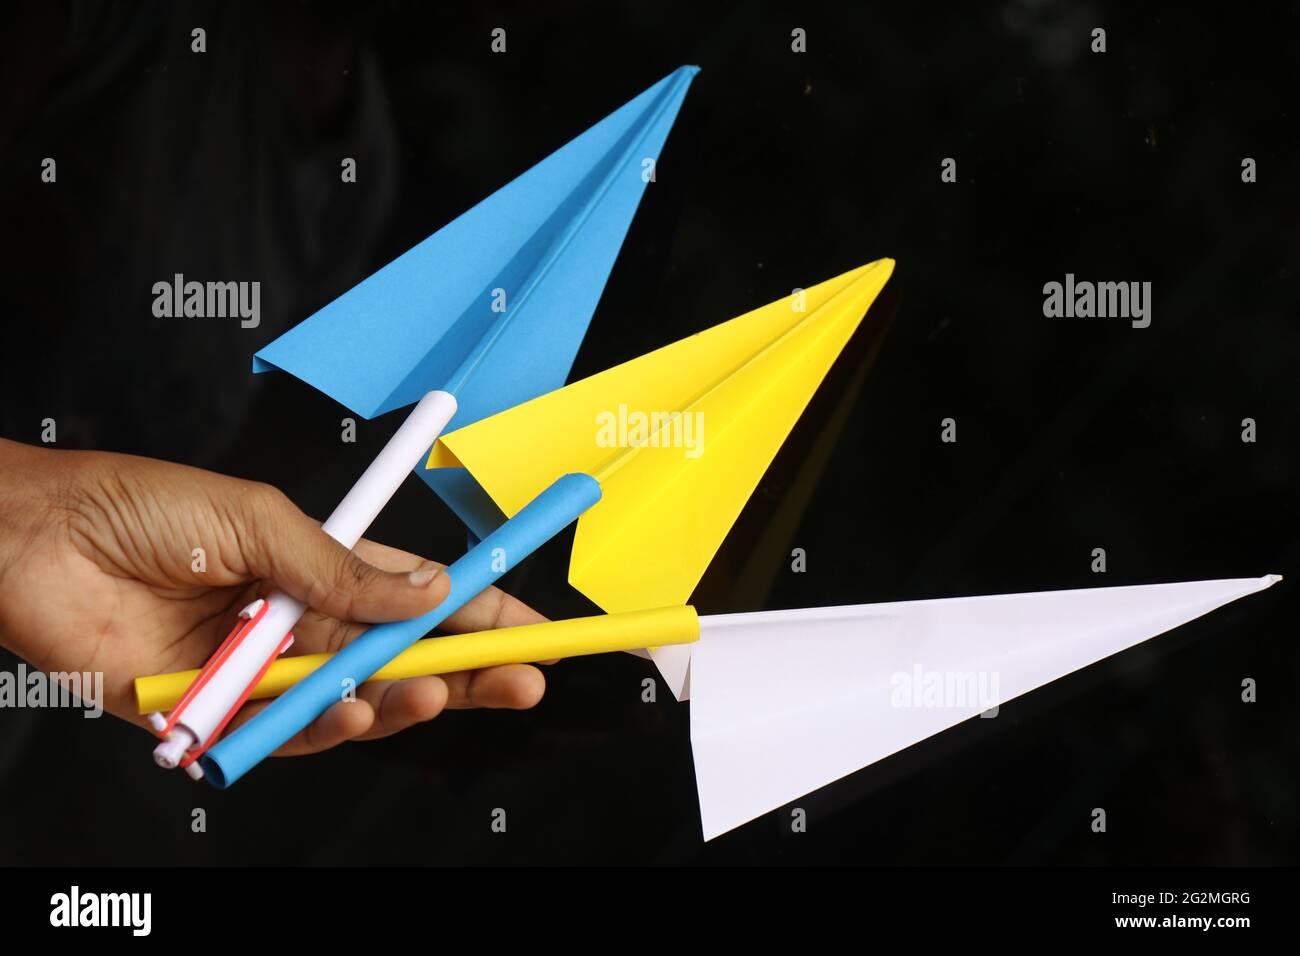 Gruppe von Papierflugzeugen in der Hand gehalten. Origami-Papierflugzeug Stockfoto